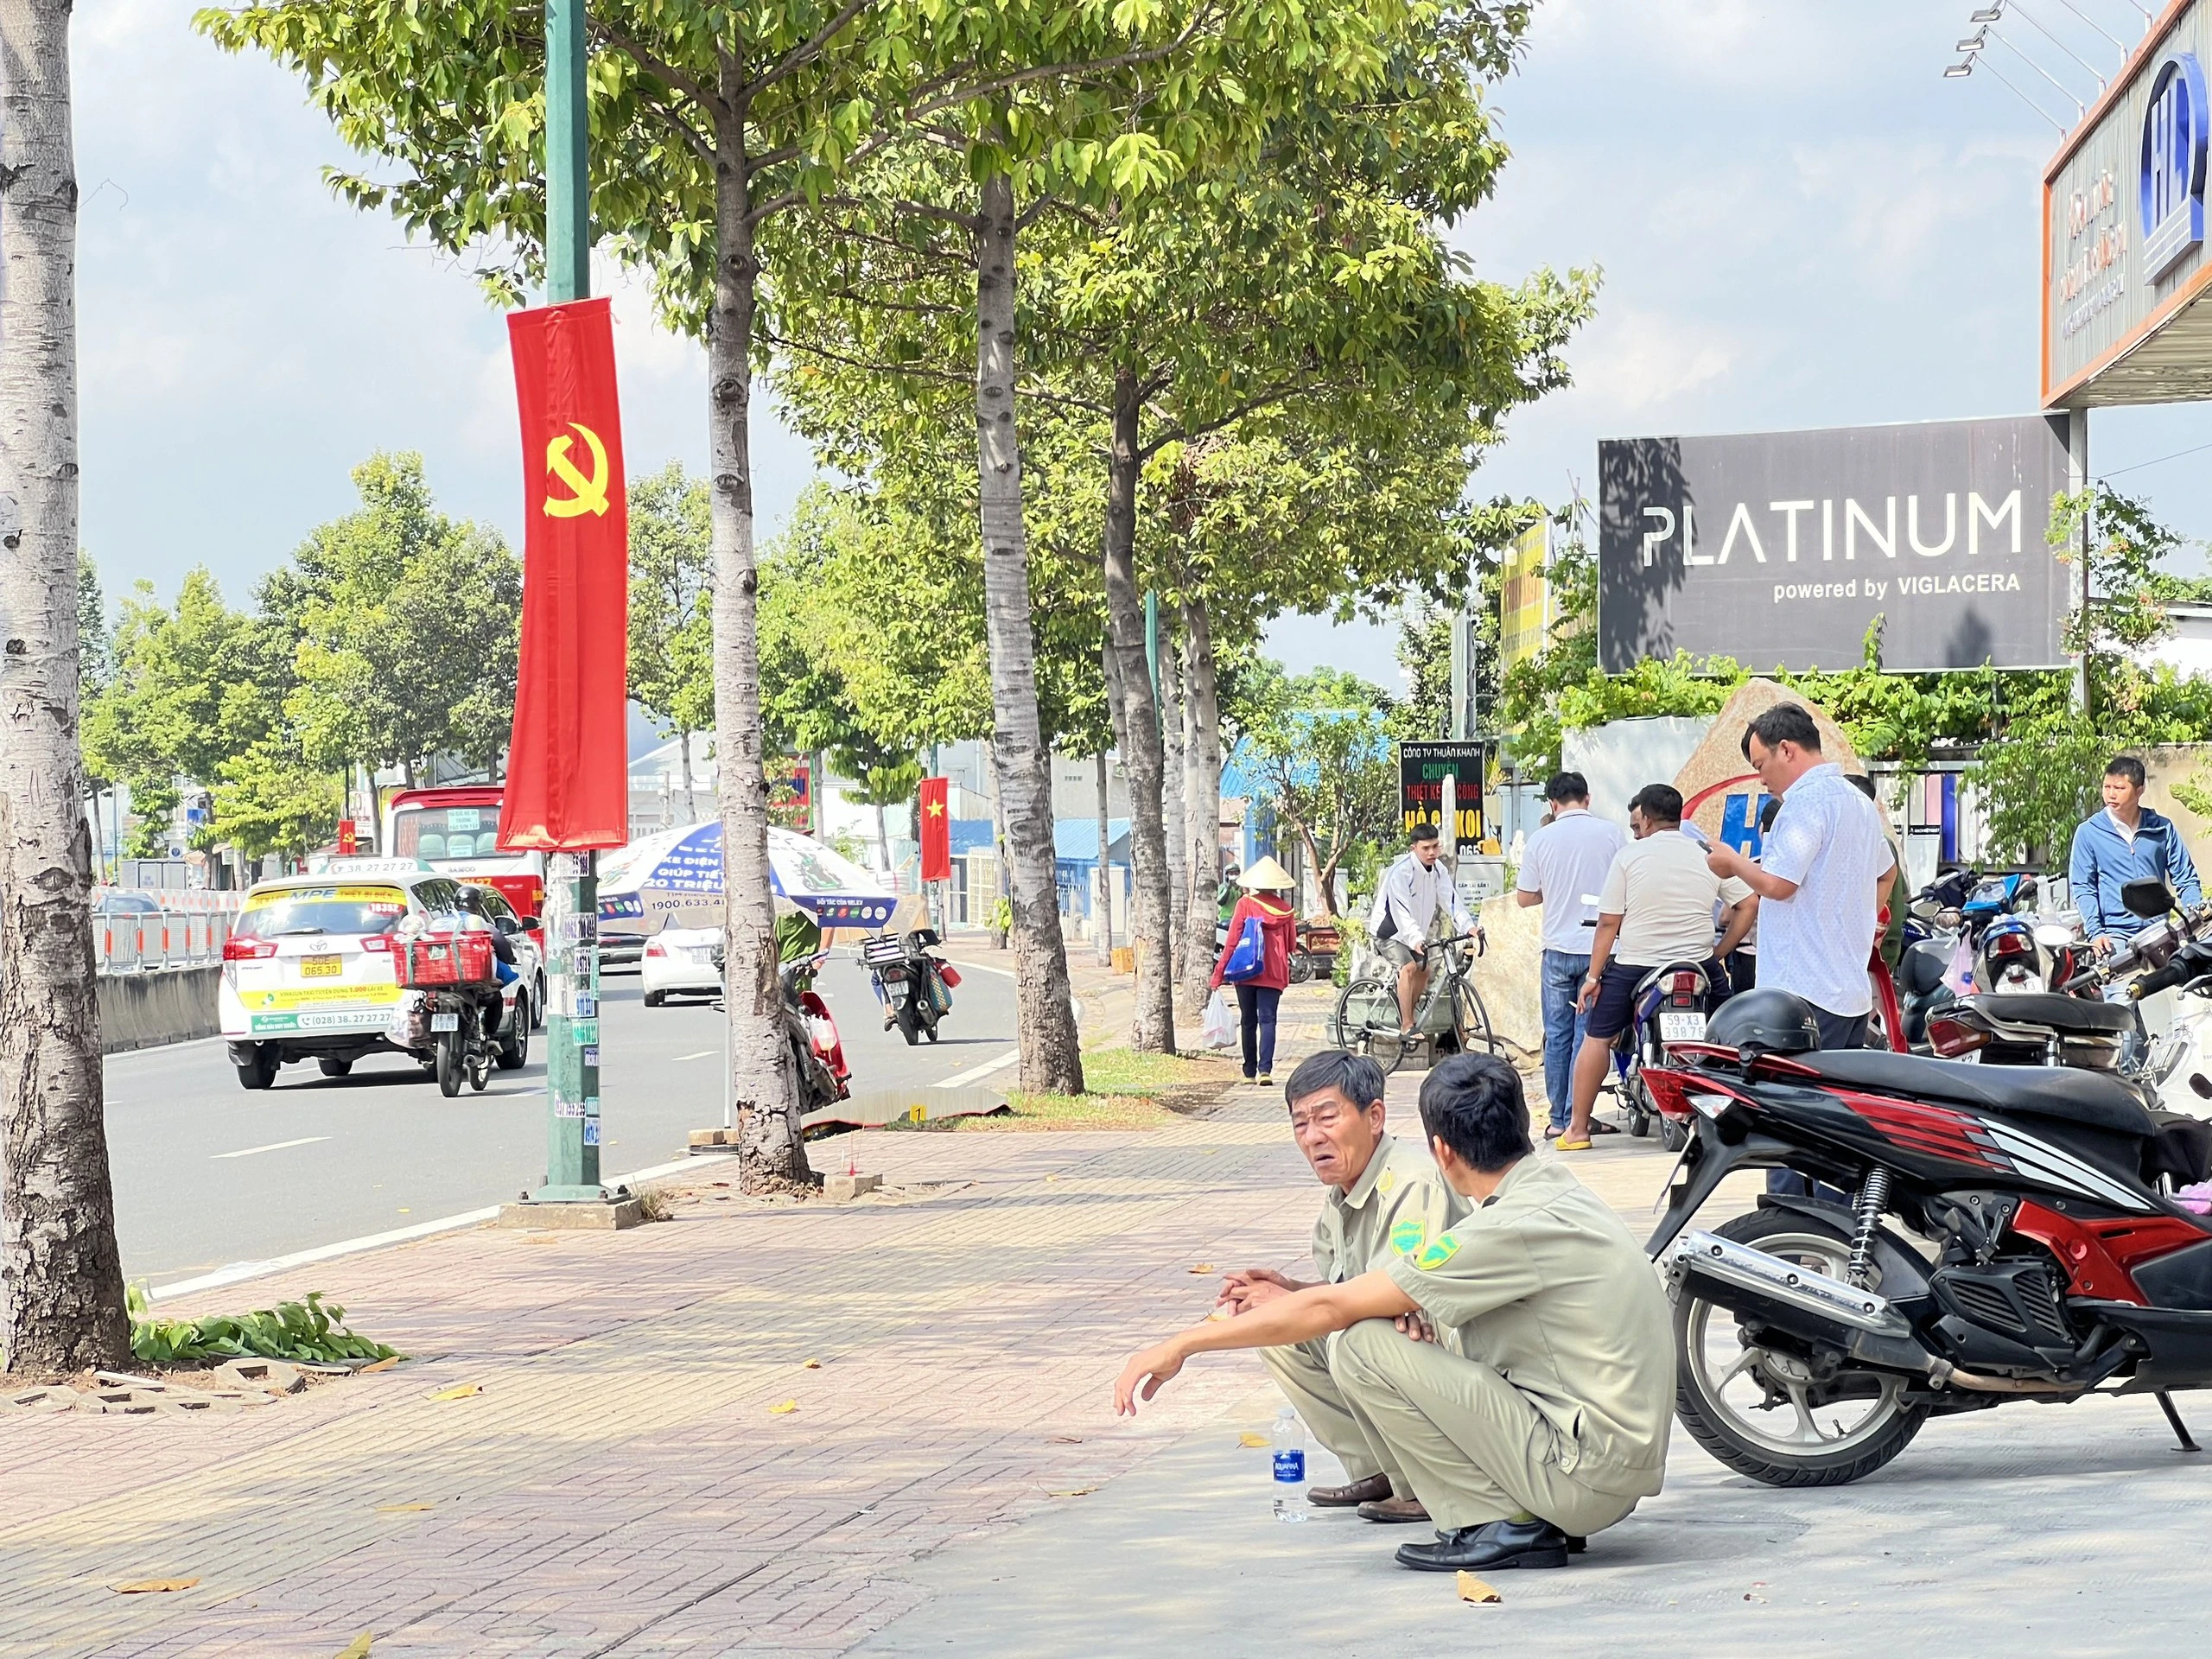 TP.Thủ Đức: Phát hiện người đàn ông tử vong bên lề đường Phạm Văn Đồng